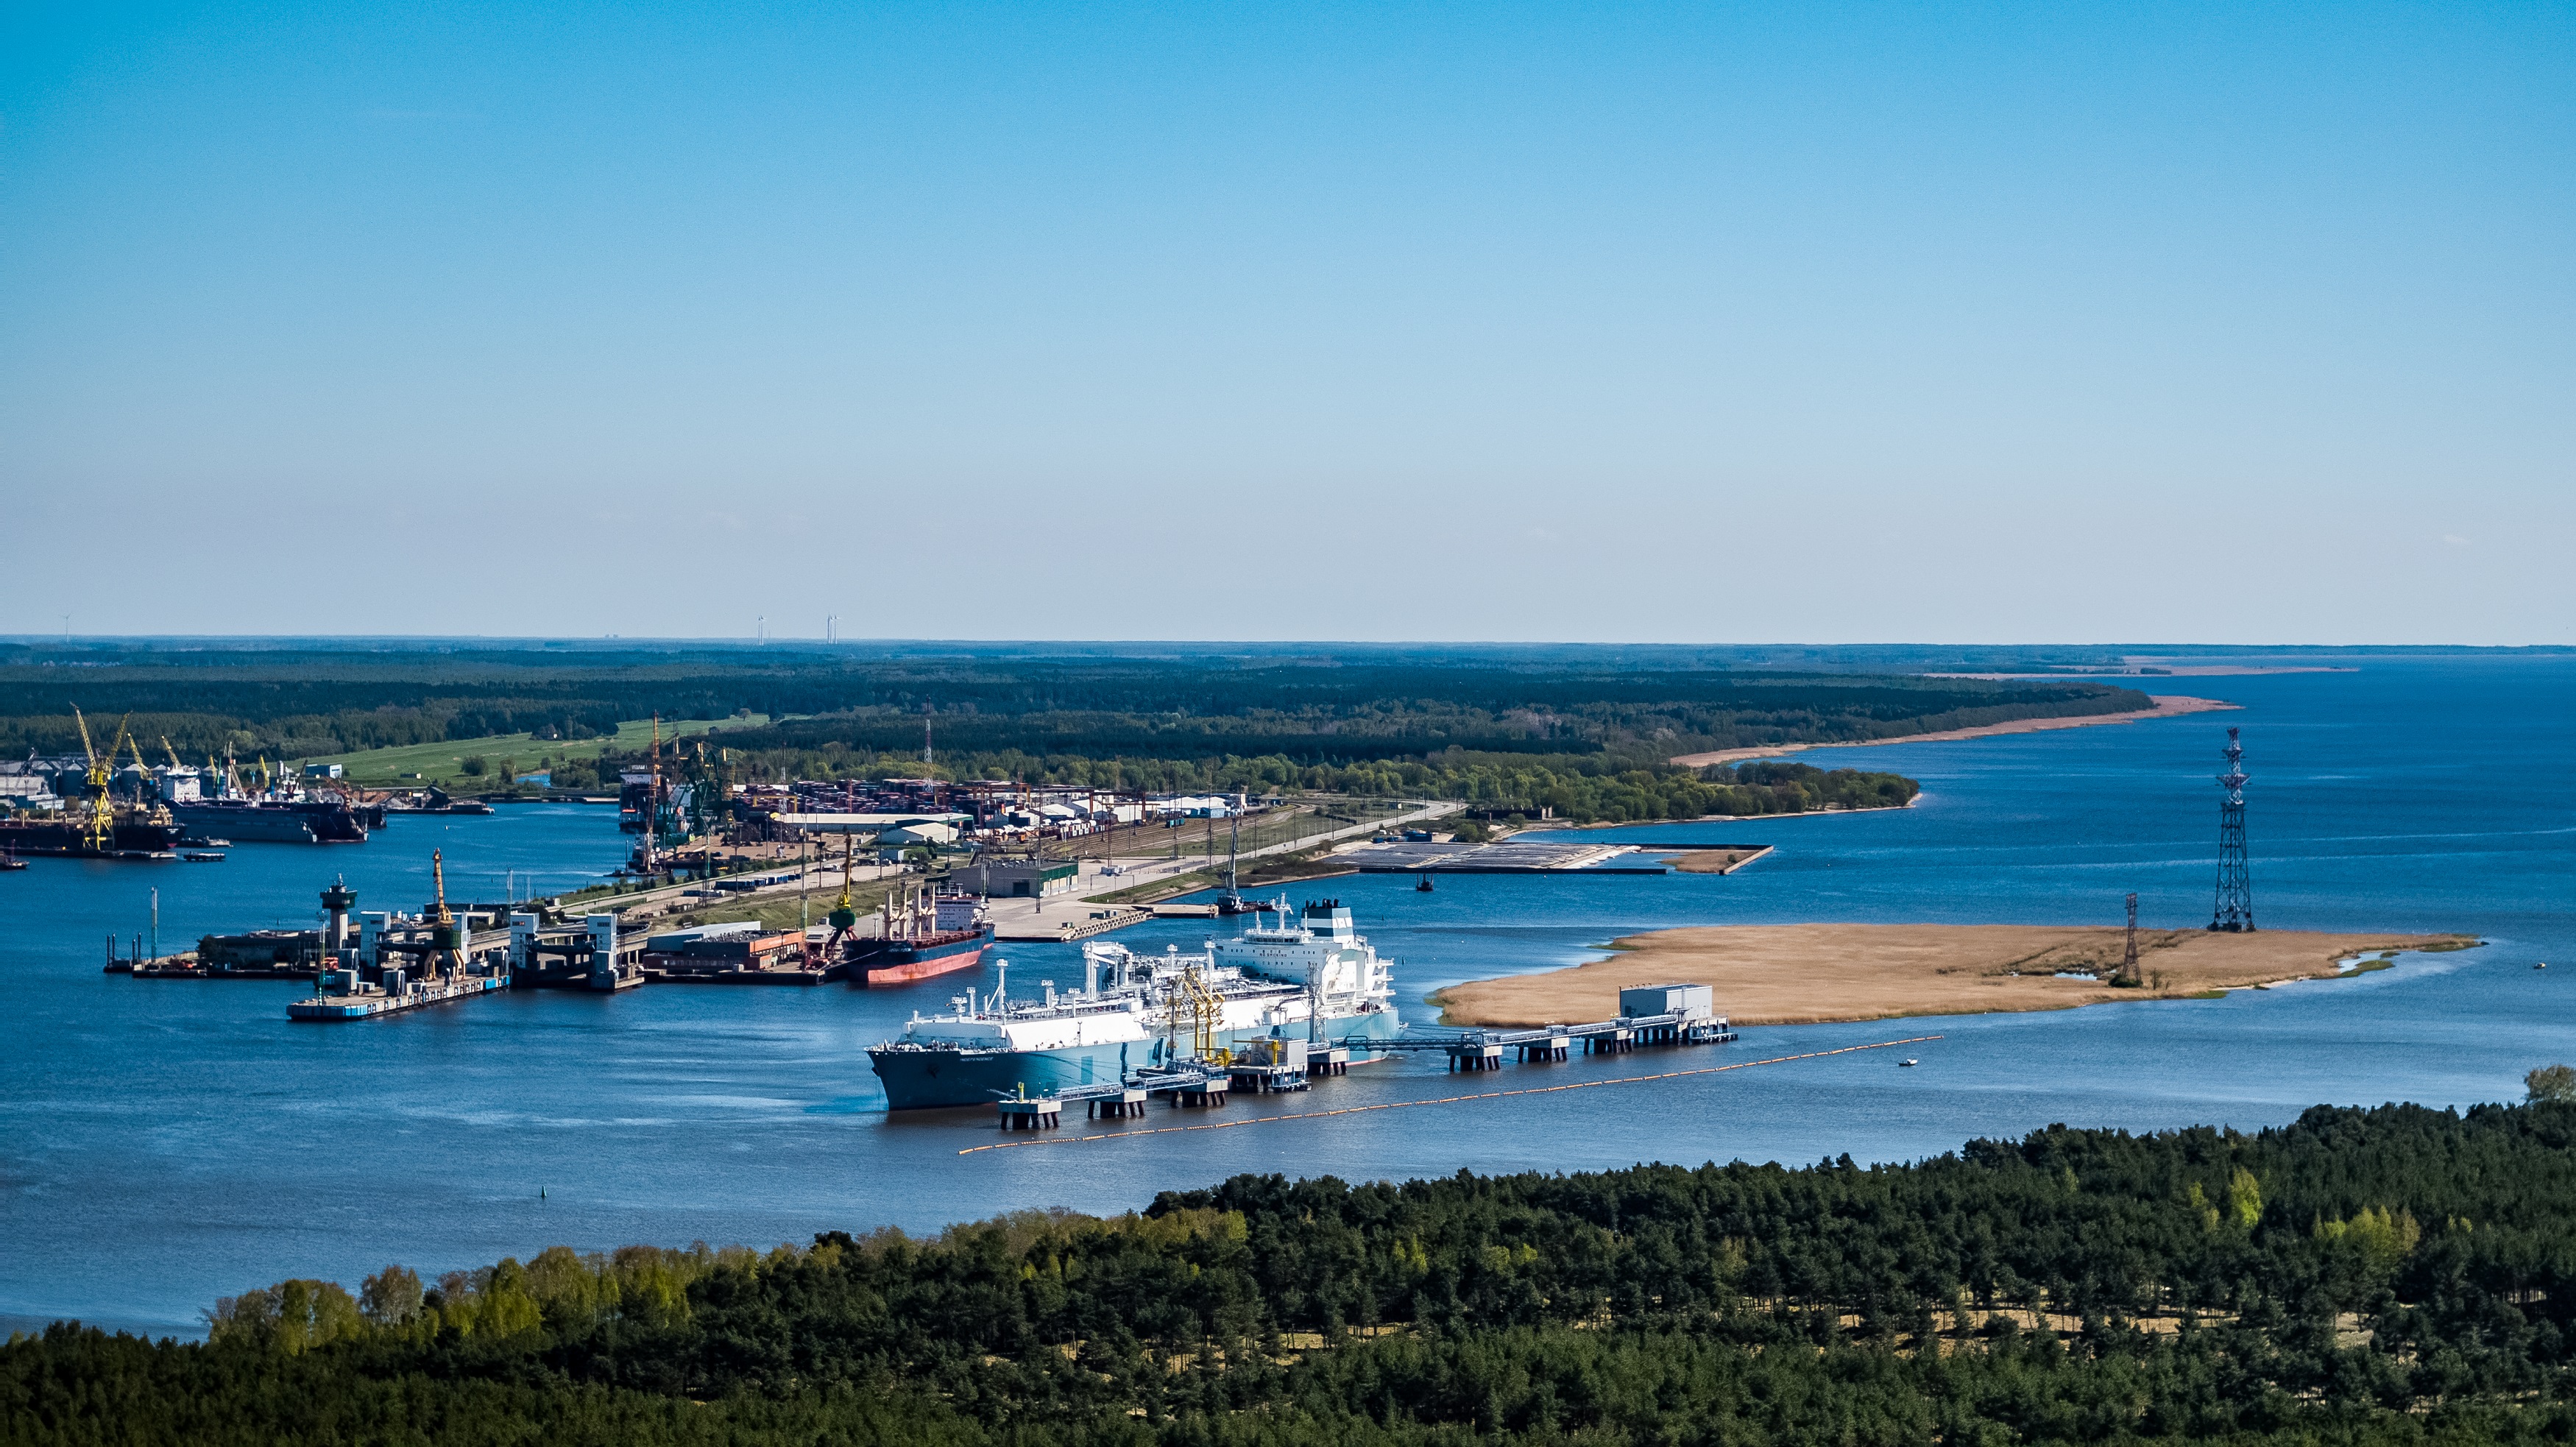 Klaipėda LNG terminal reaches new milestone